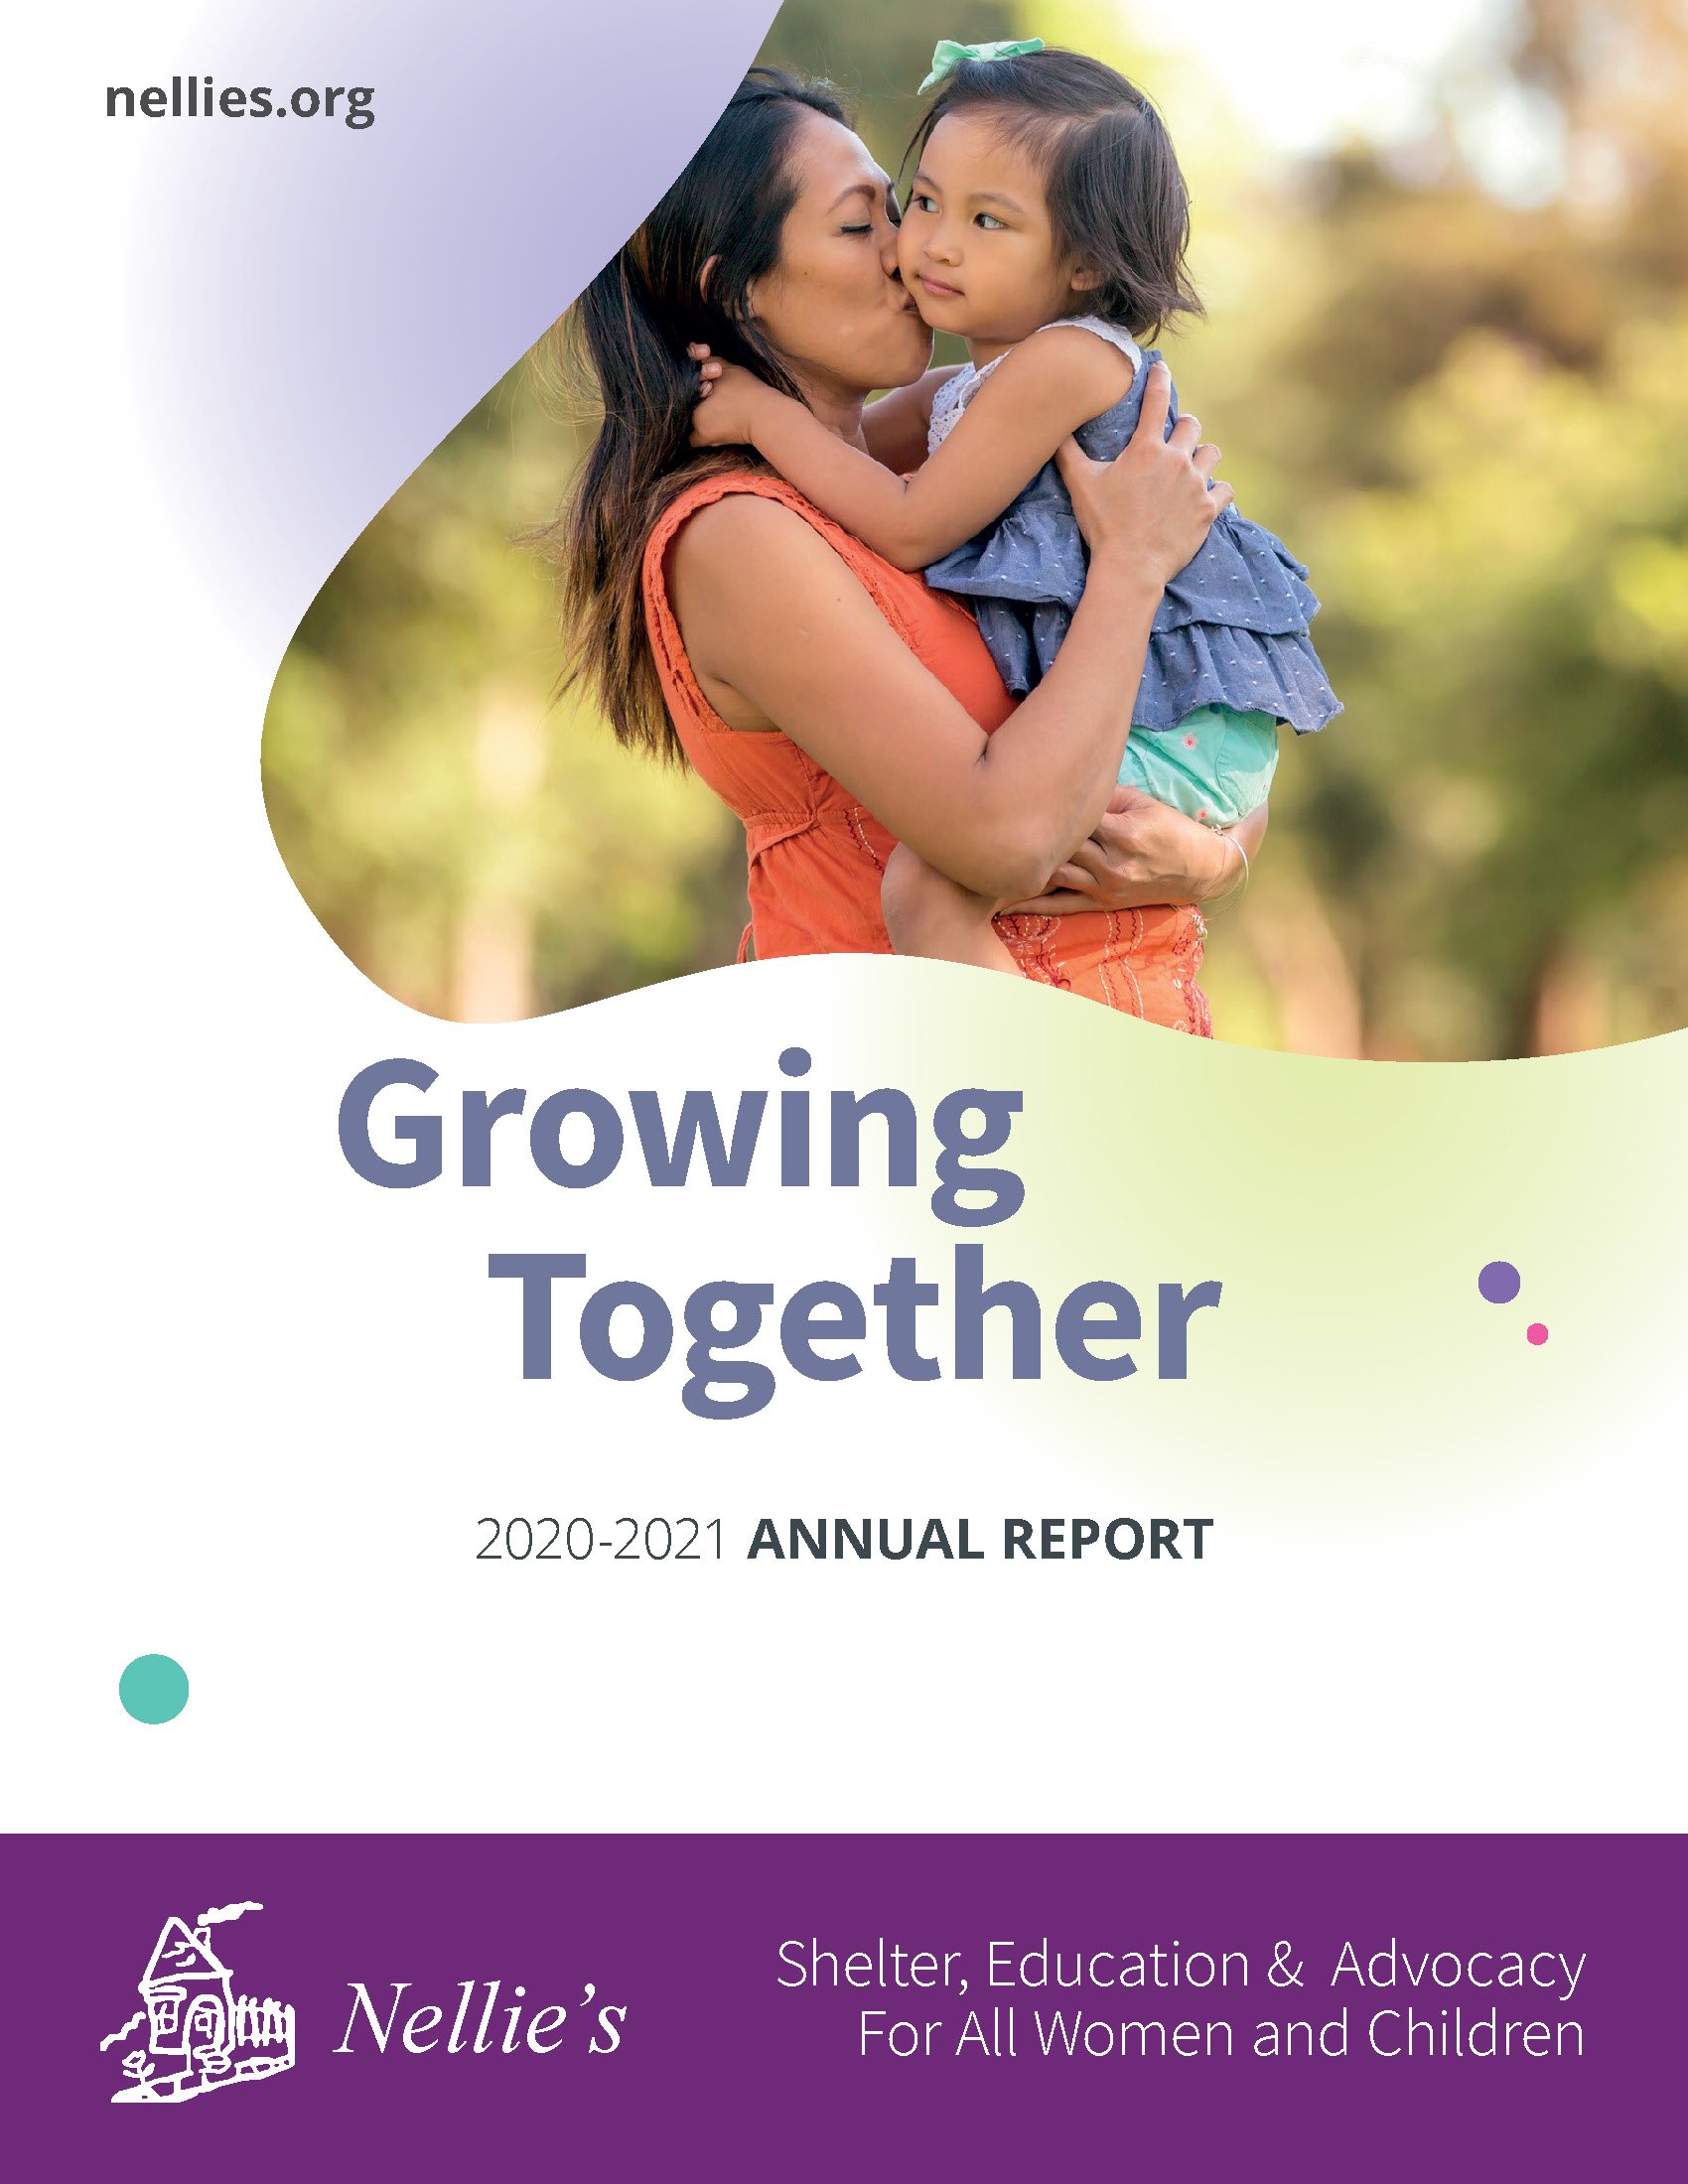 Nellie's Annual Report 2020/2021